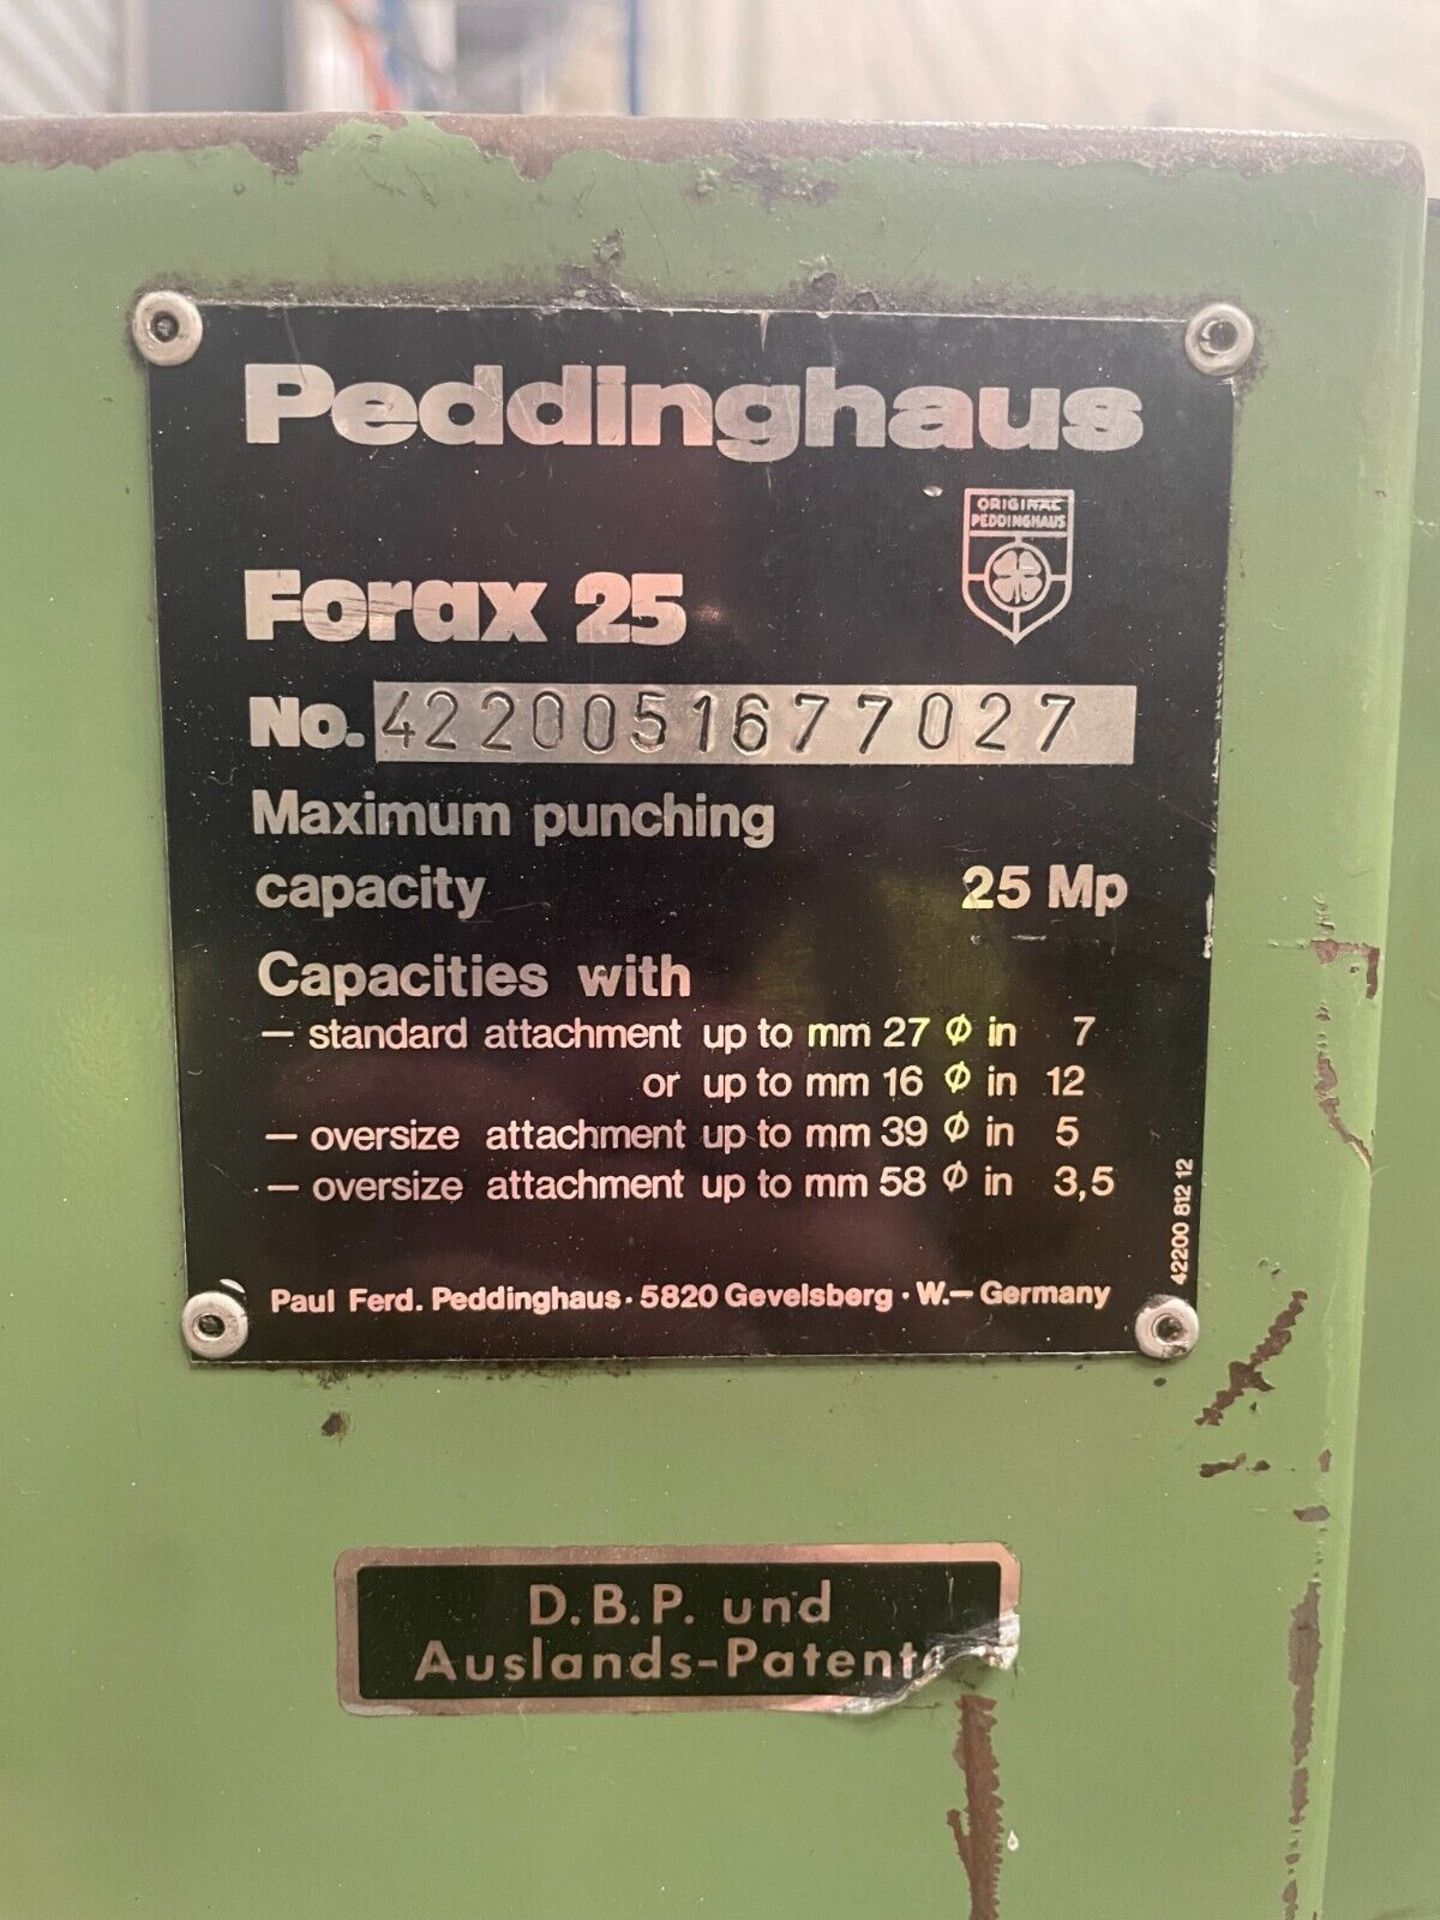 Peddinghaus Forax 25 Punch Press Punching Machine 25 Ton - Image 4 of 4